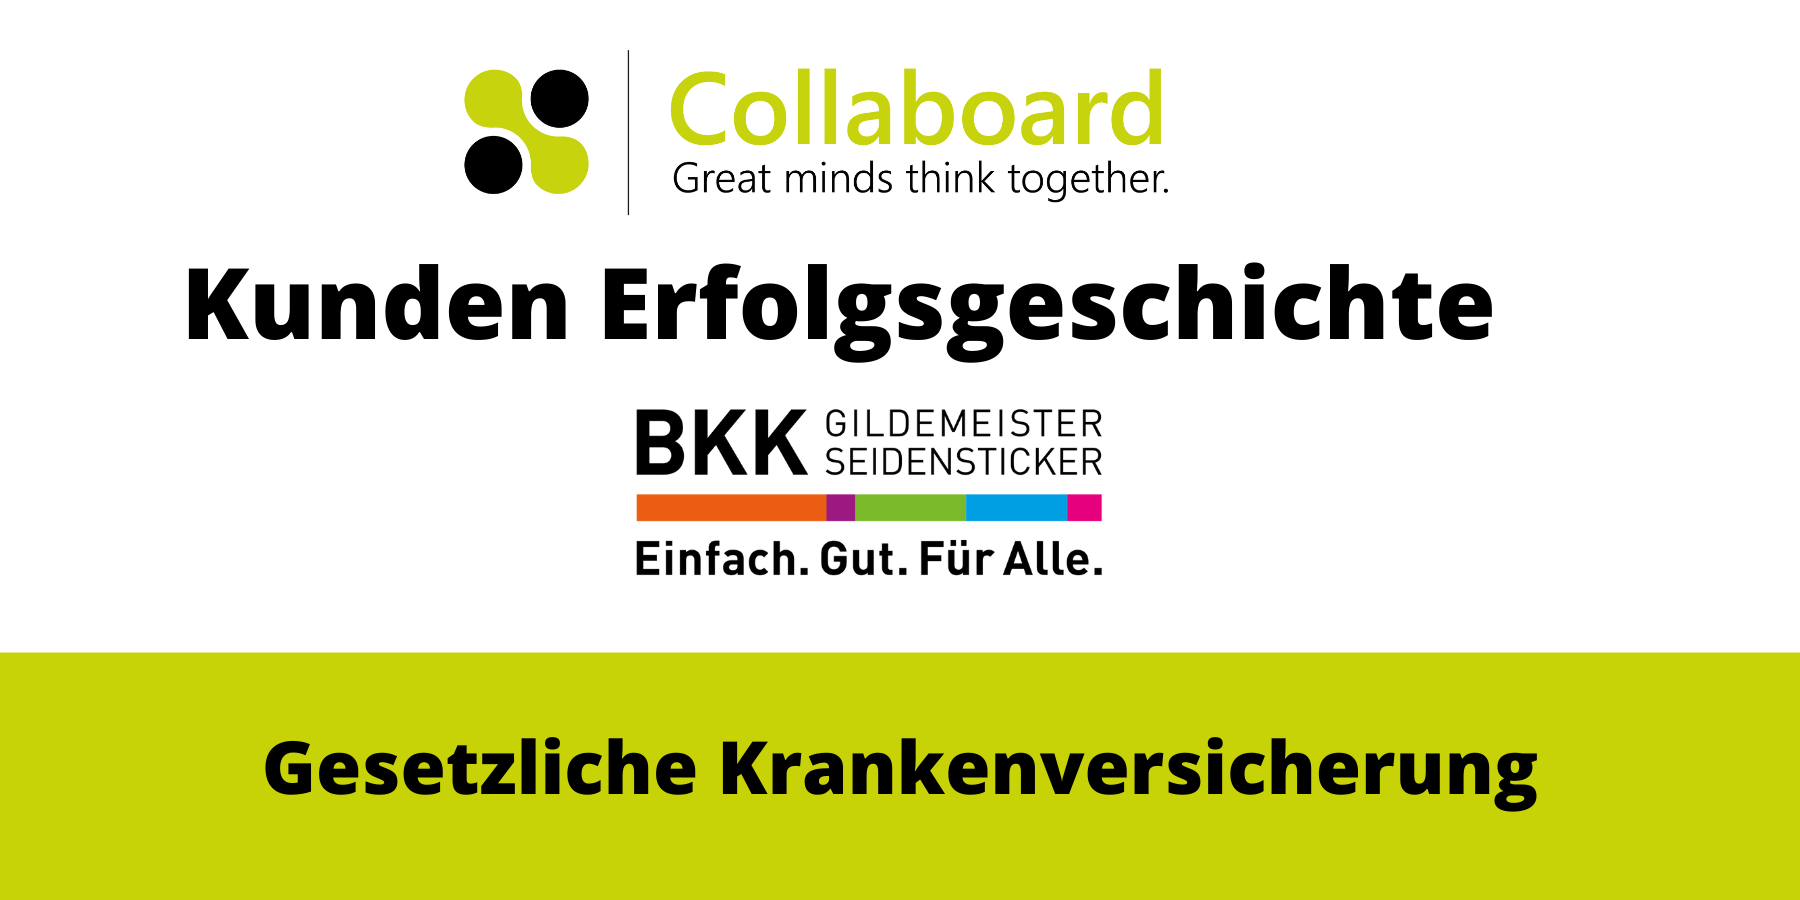 Collaboard_Kundenerfolgsgeschichte_Deutsche_Krankenkasse